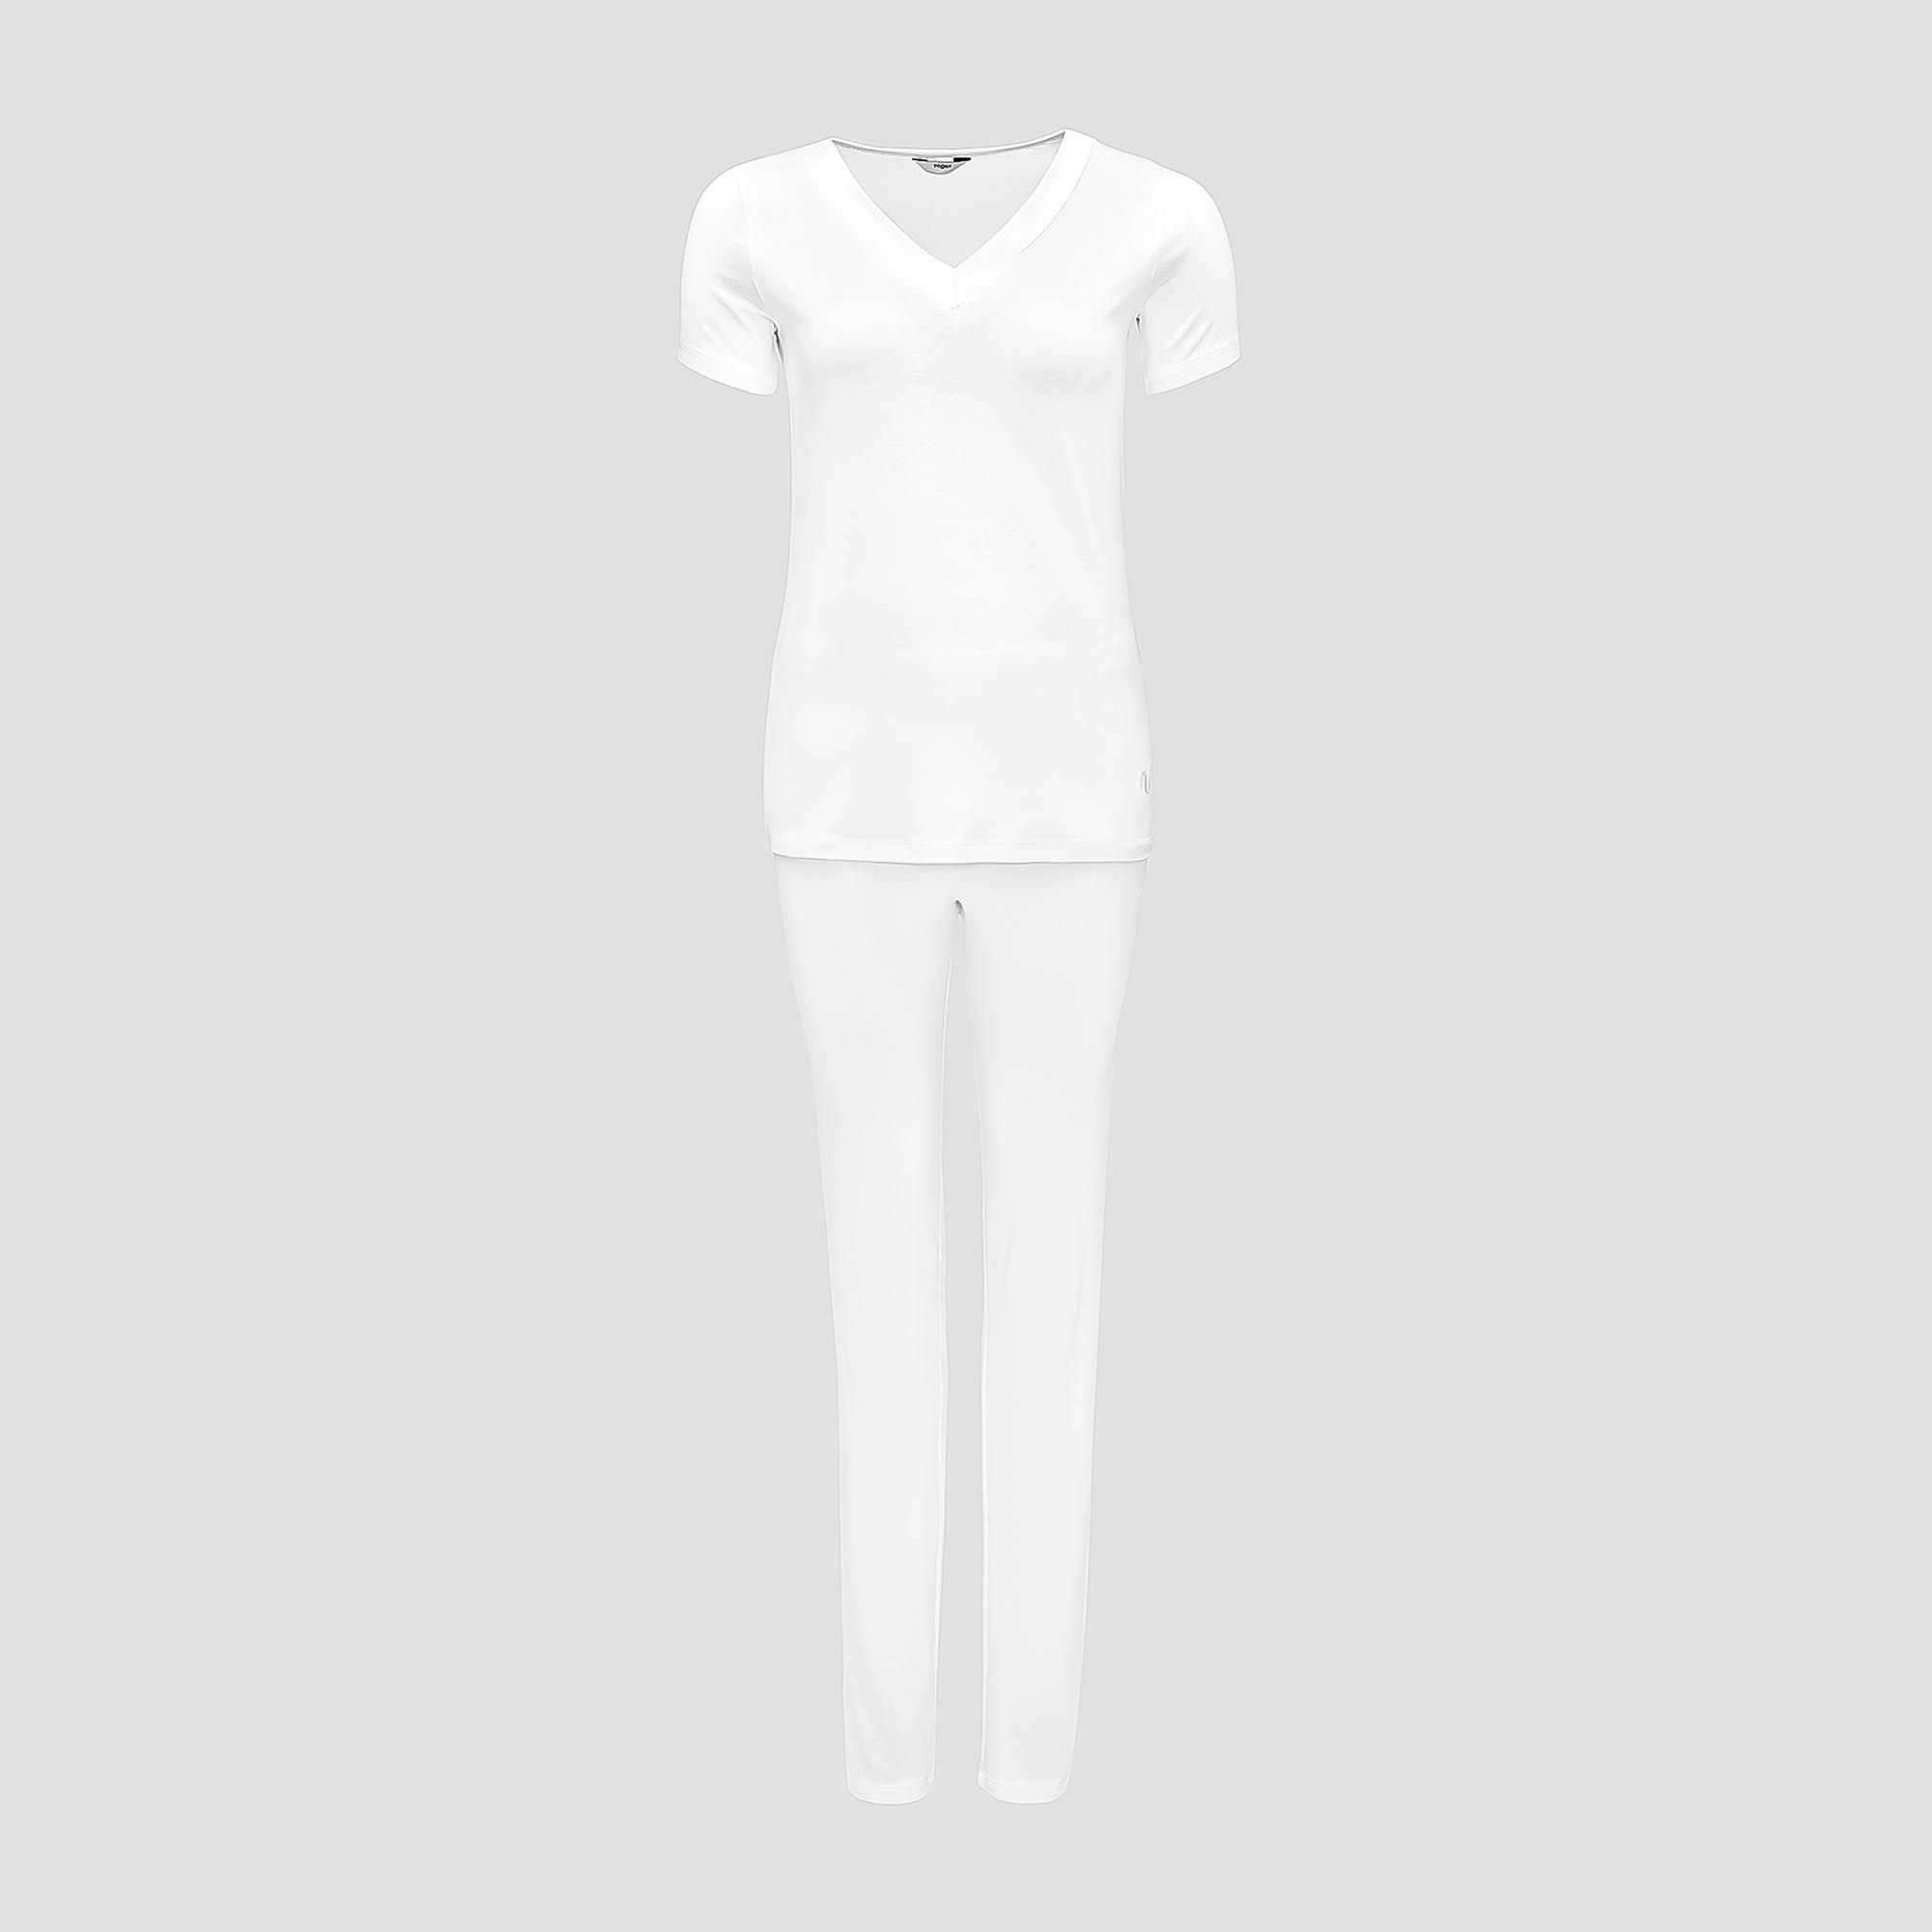 Пижама Togas Ингелла белая женская S(44) 2 предмета жен пижама с шортами инь янь белый р 48